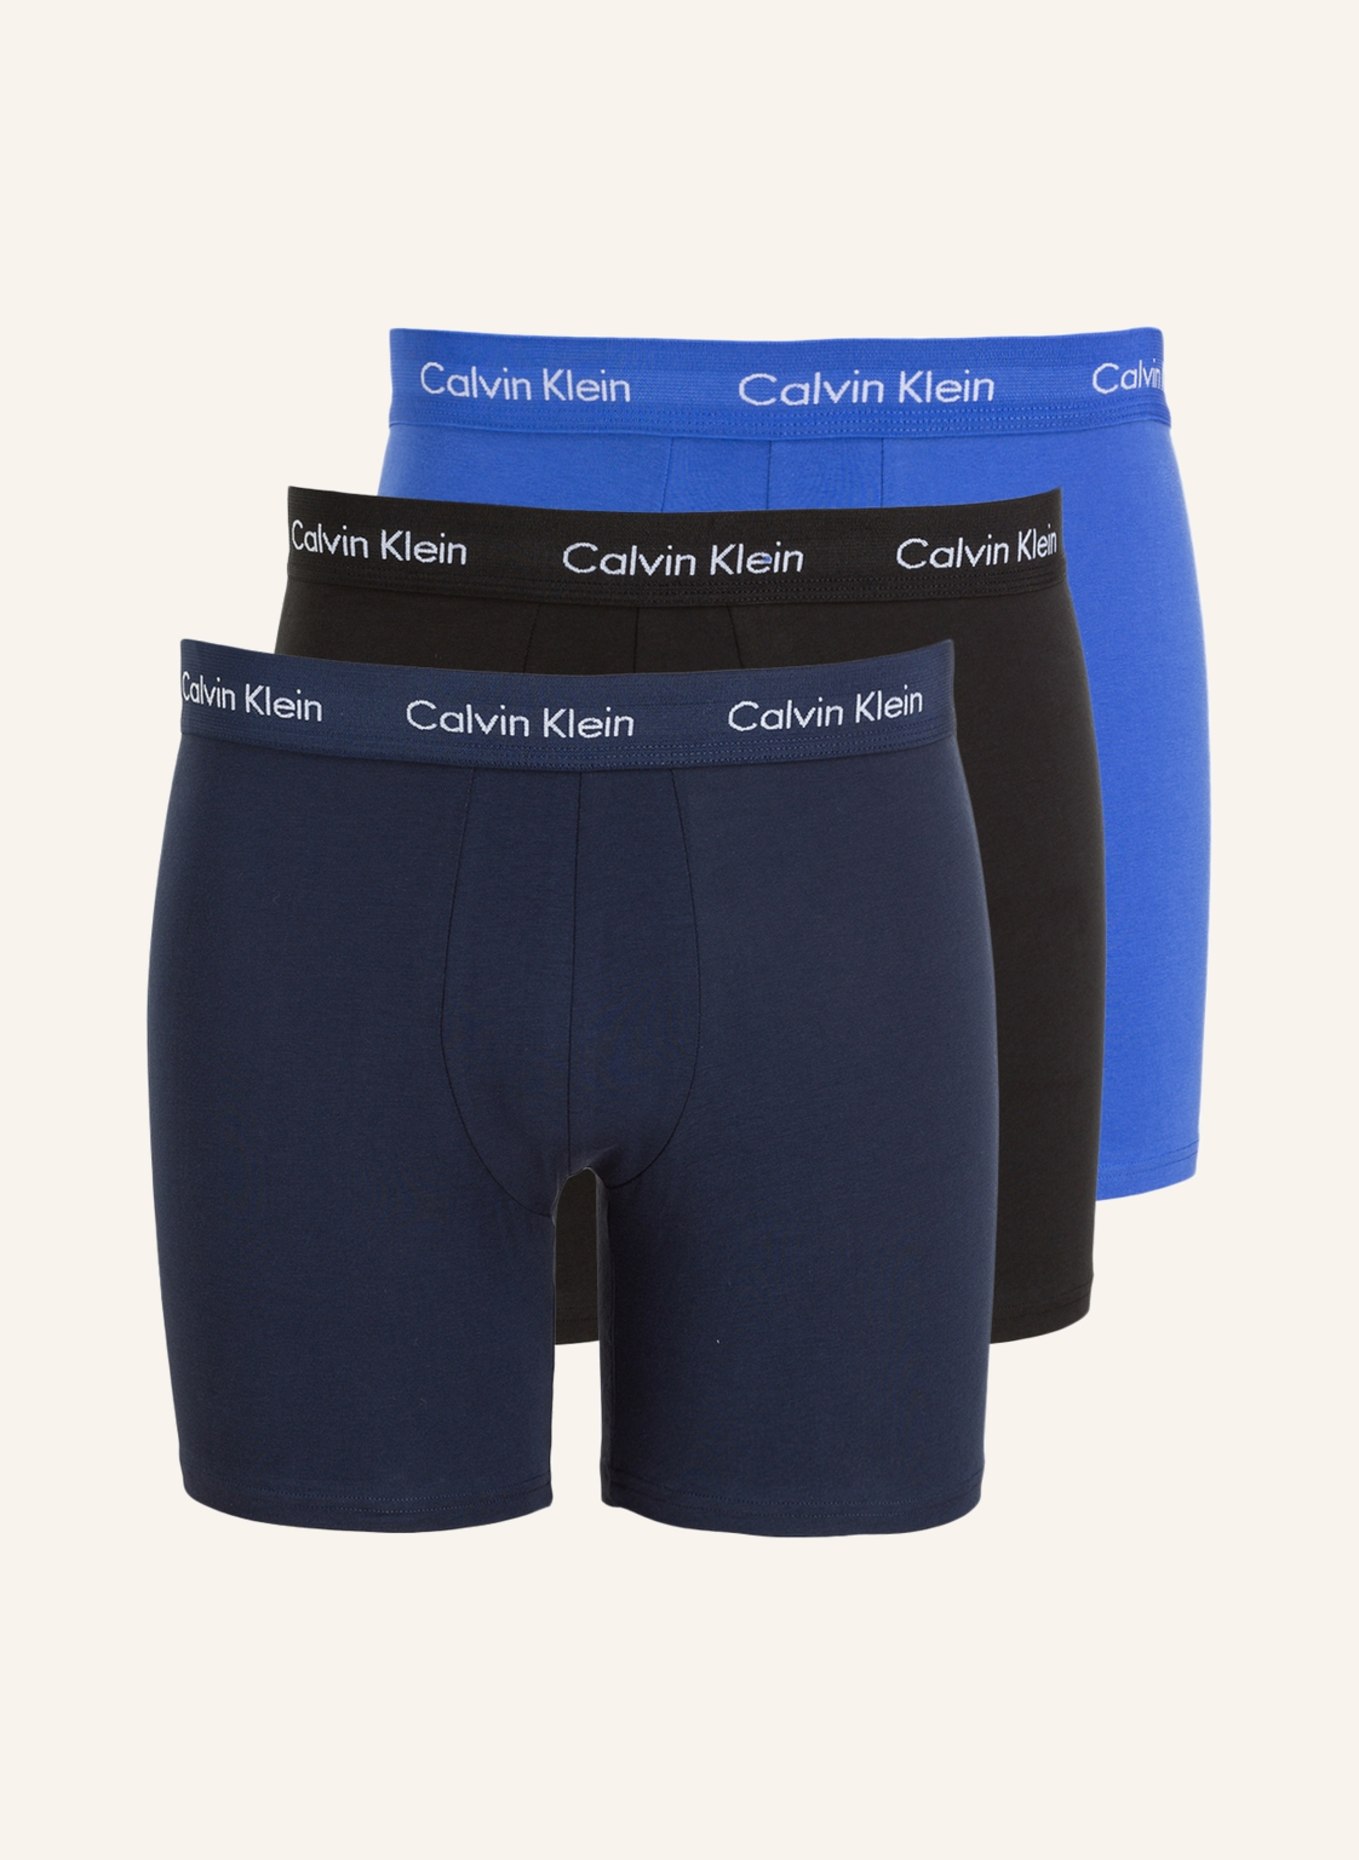 Calvin Klein 3er-Pack Boxershorts COTTON STRETCH, Farbe: DUNKELBLAU/ SCHWARZ/ BLAU (Bild 1)